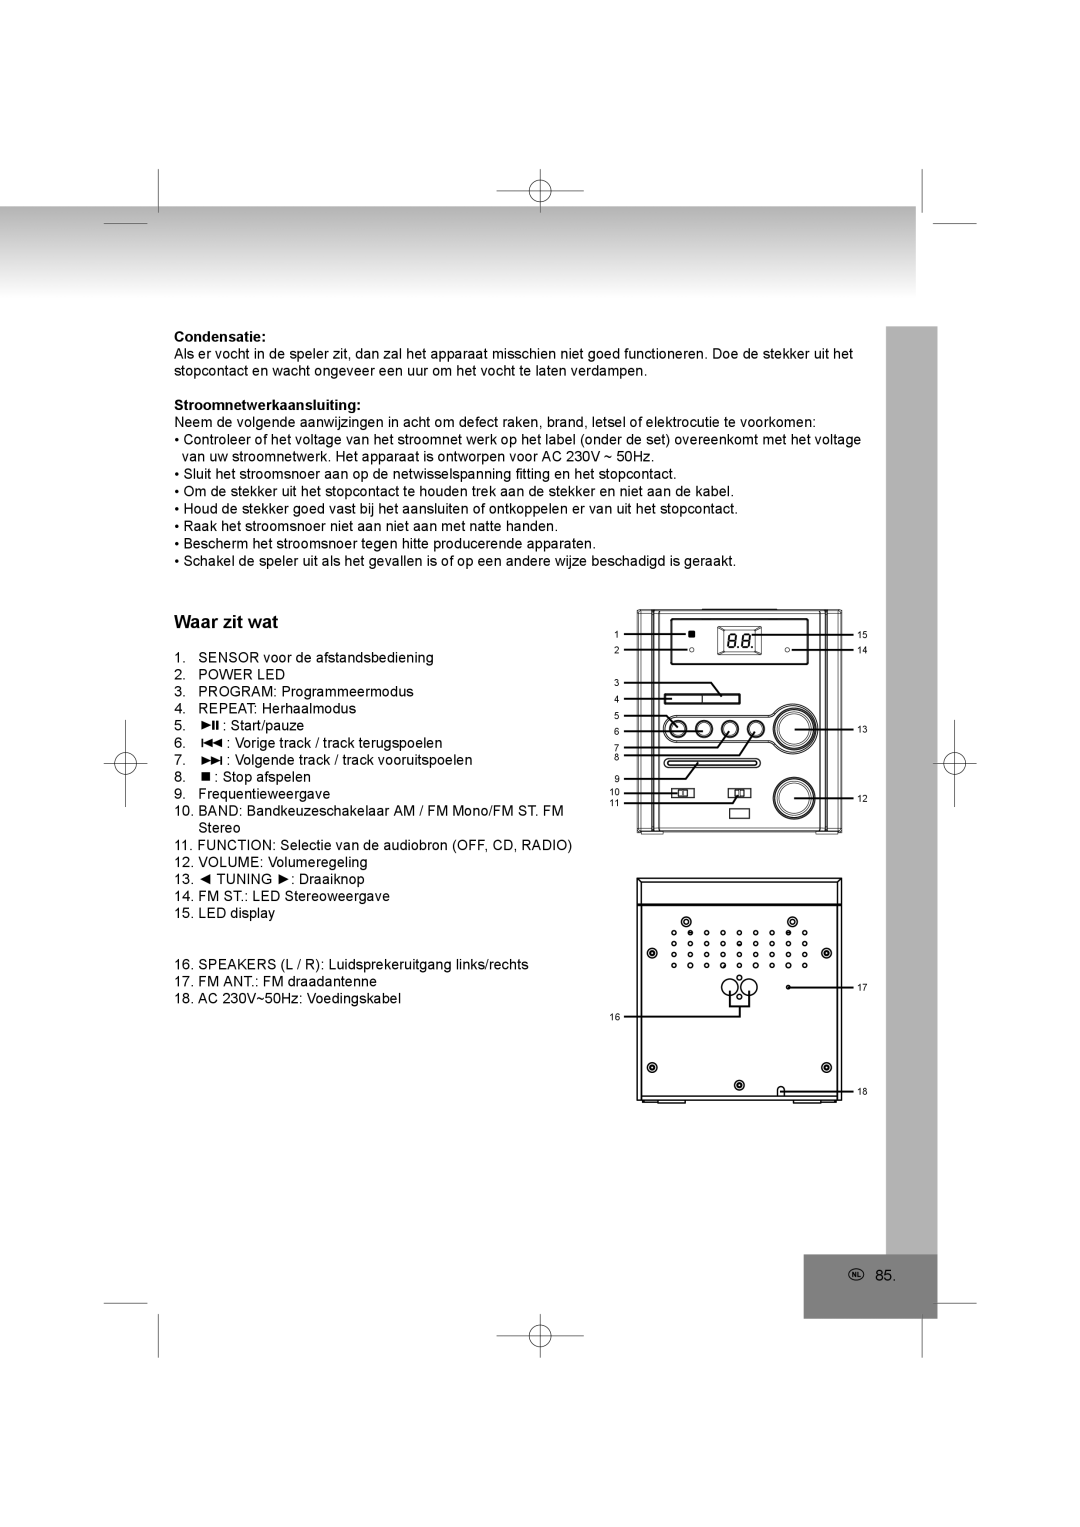 Elta 2402N manual Waar zit wat, Condensatie, Stroomnetwerkaansluiting 